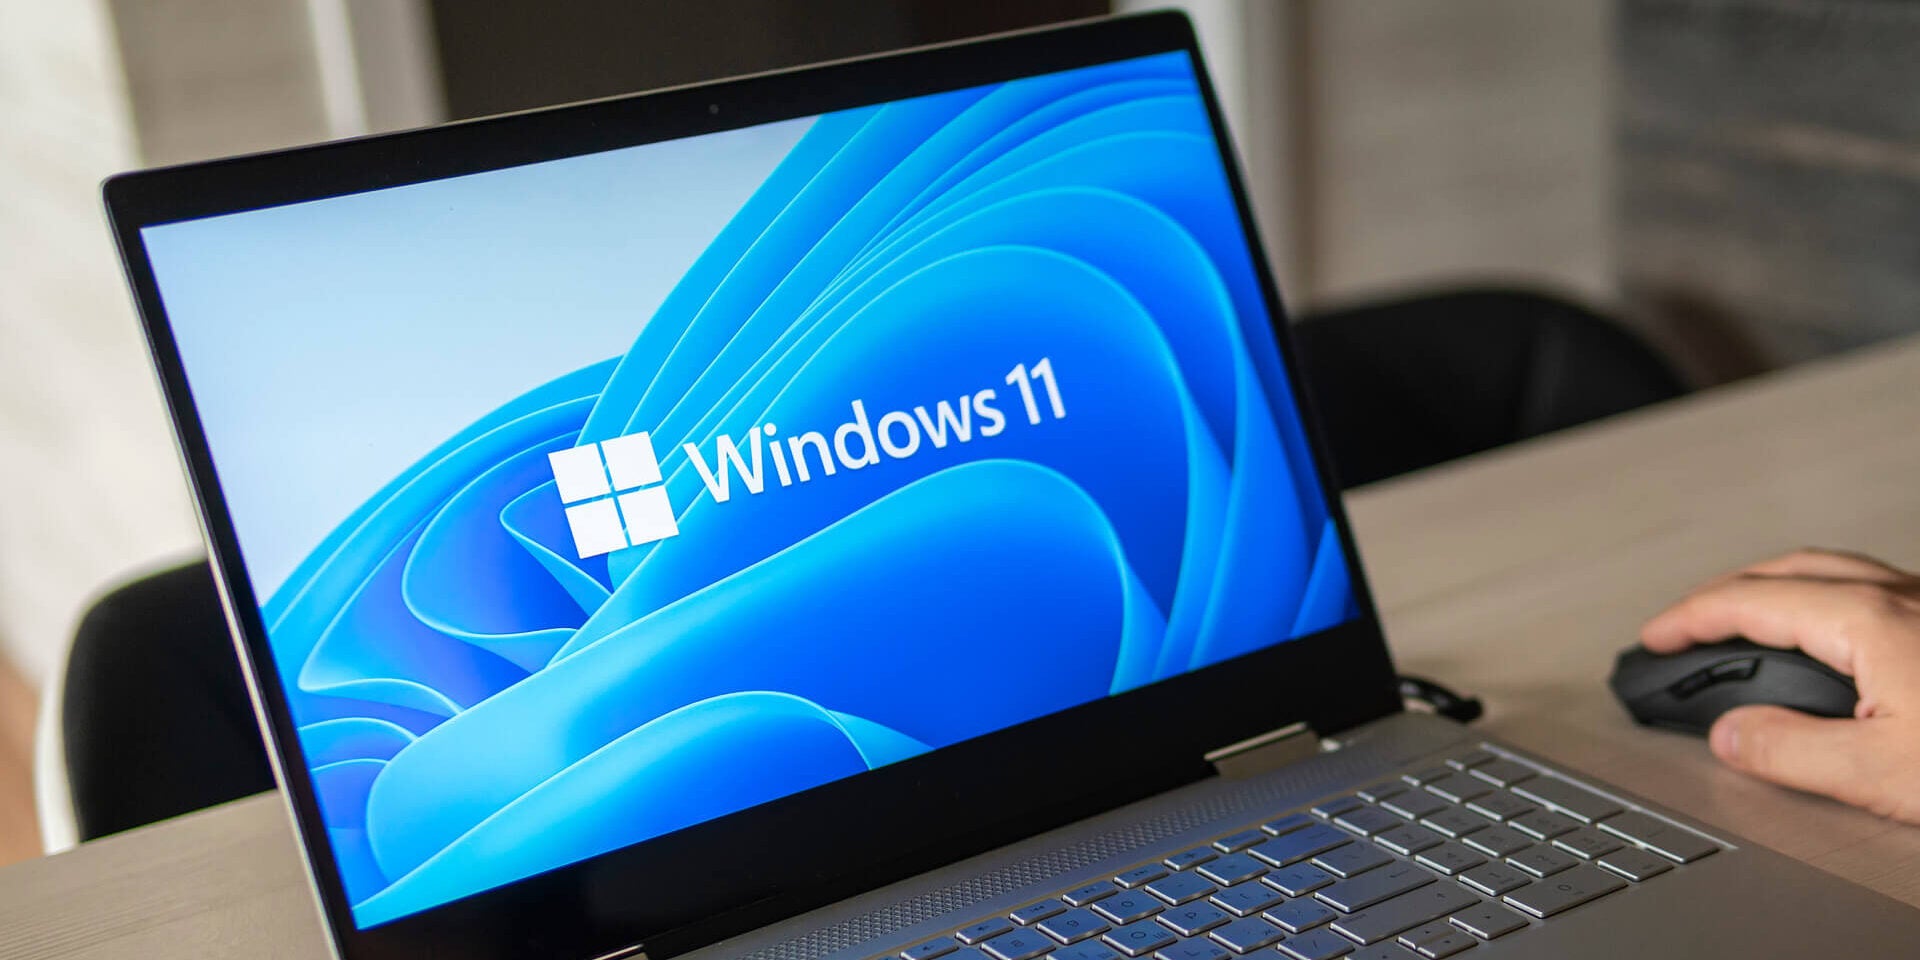 Logotipo do Microsoft Windows 11 em execução na tela do laptop usado no ambiente de trabalho